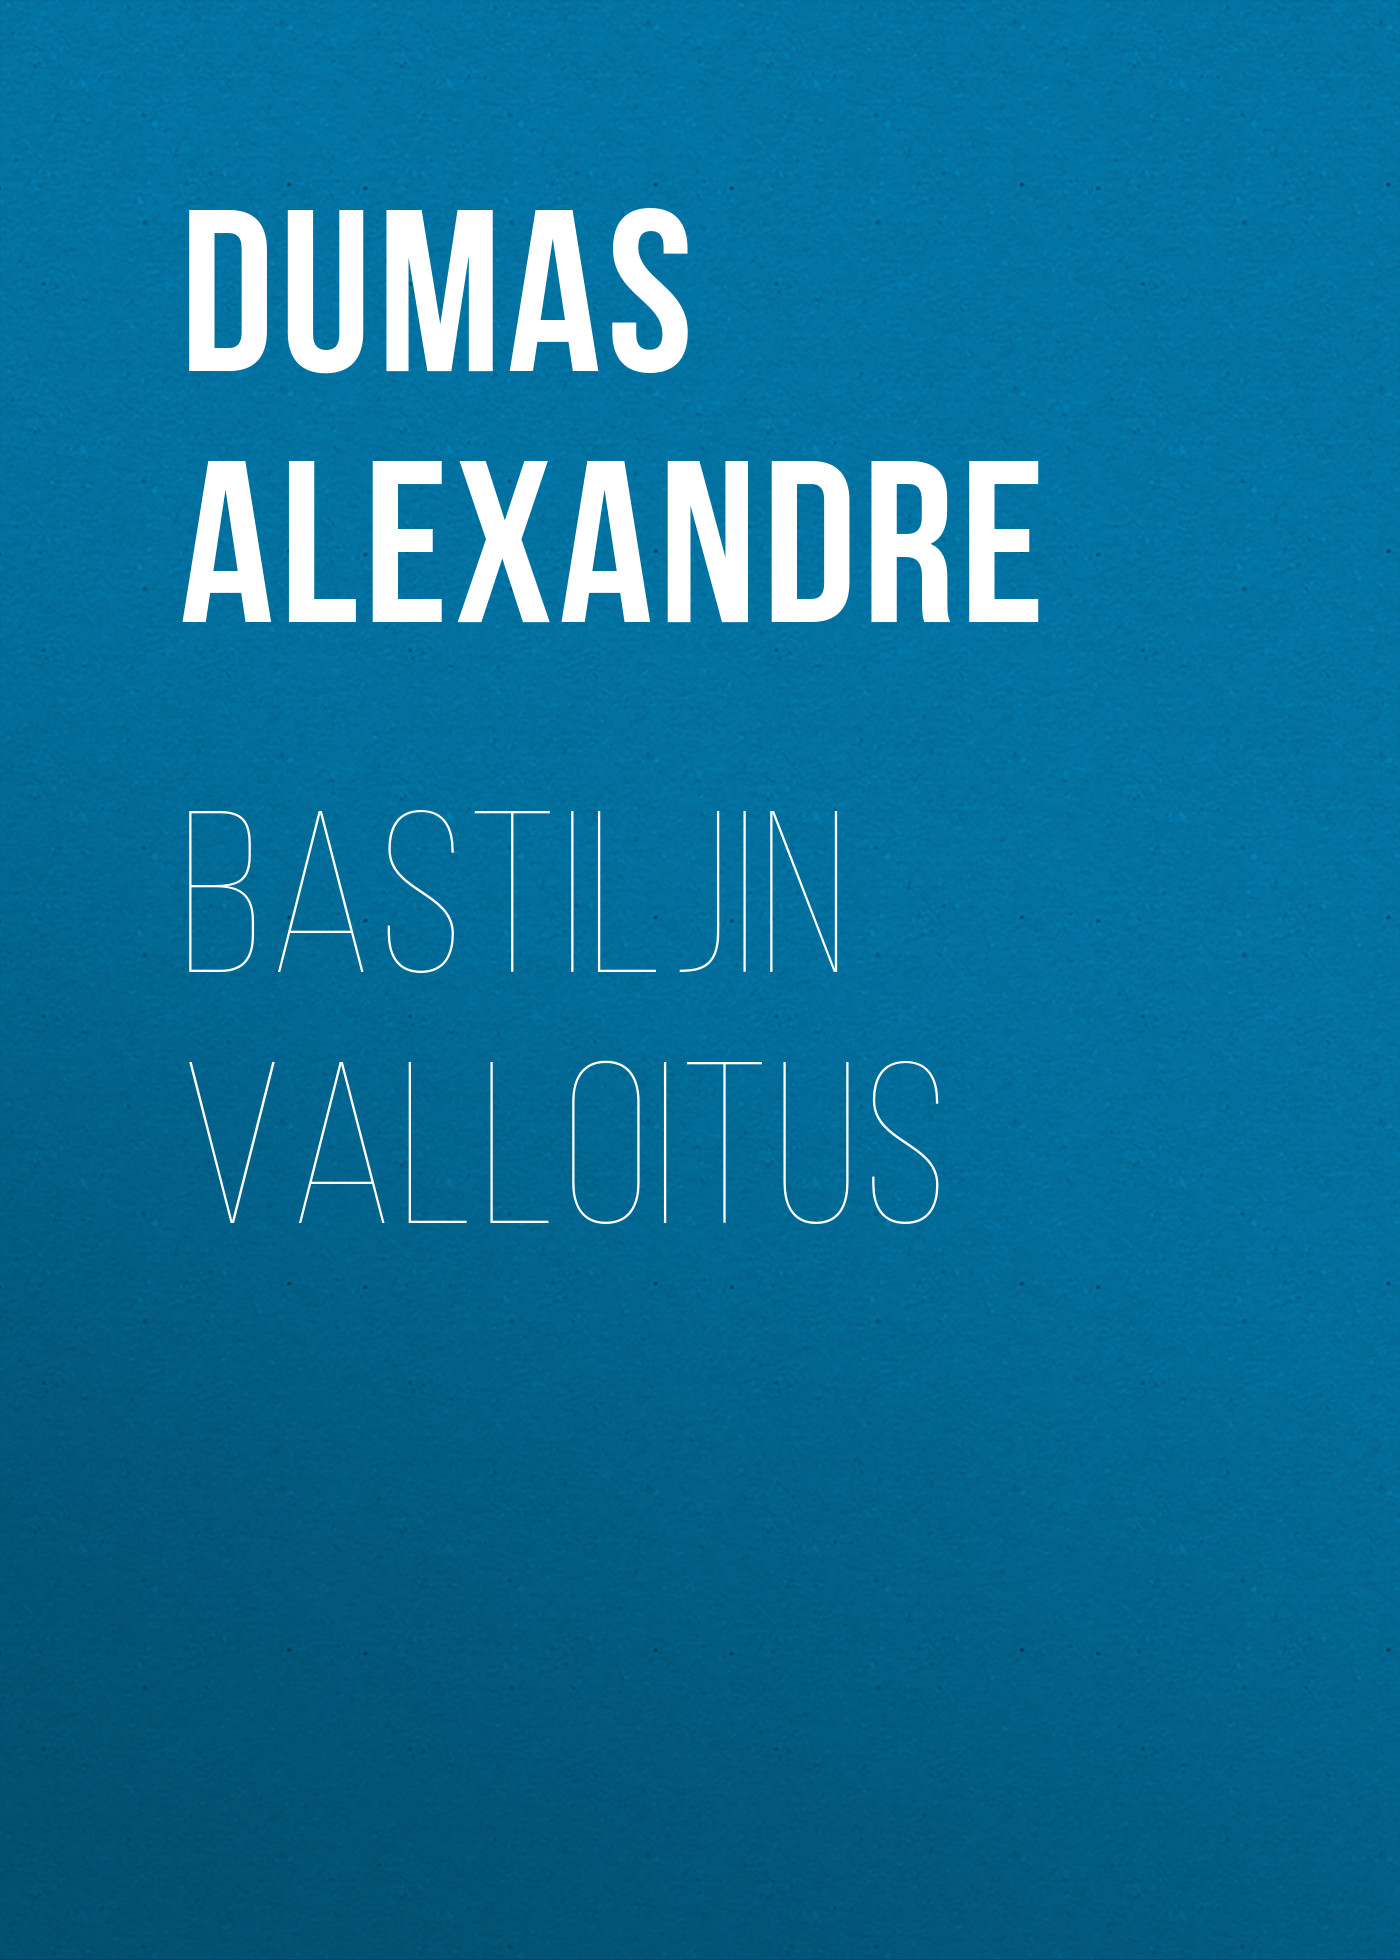 Книга Bastiljin valloitus из серии , созданная Alexandre Dumas, может относится к жанру Литература 19 века, Зарубежная старинная литература, Зарубежная классика. Стоимость электронной книги Bastiljin valloitus с идентификатором 25203199 составляет 0 руб.